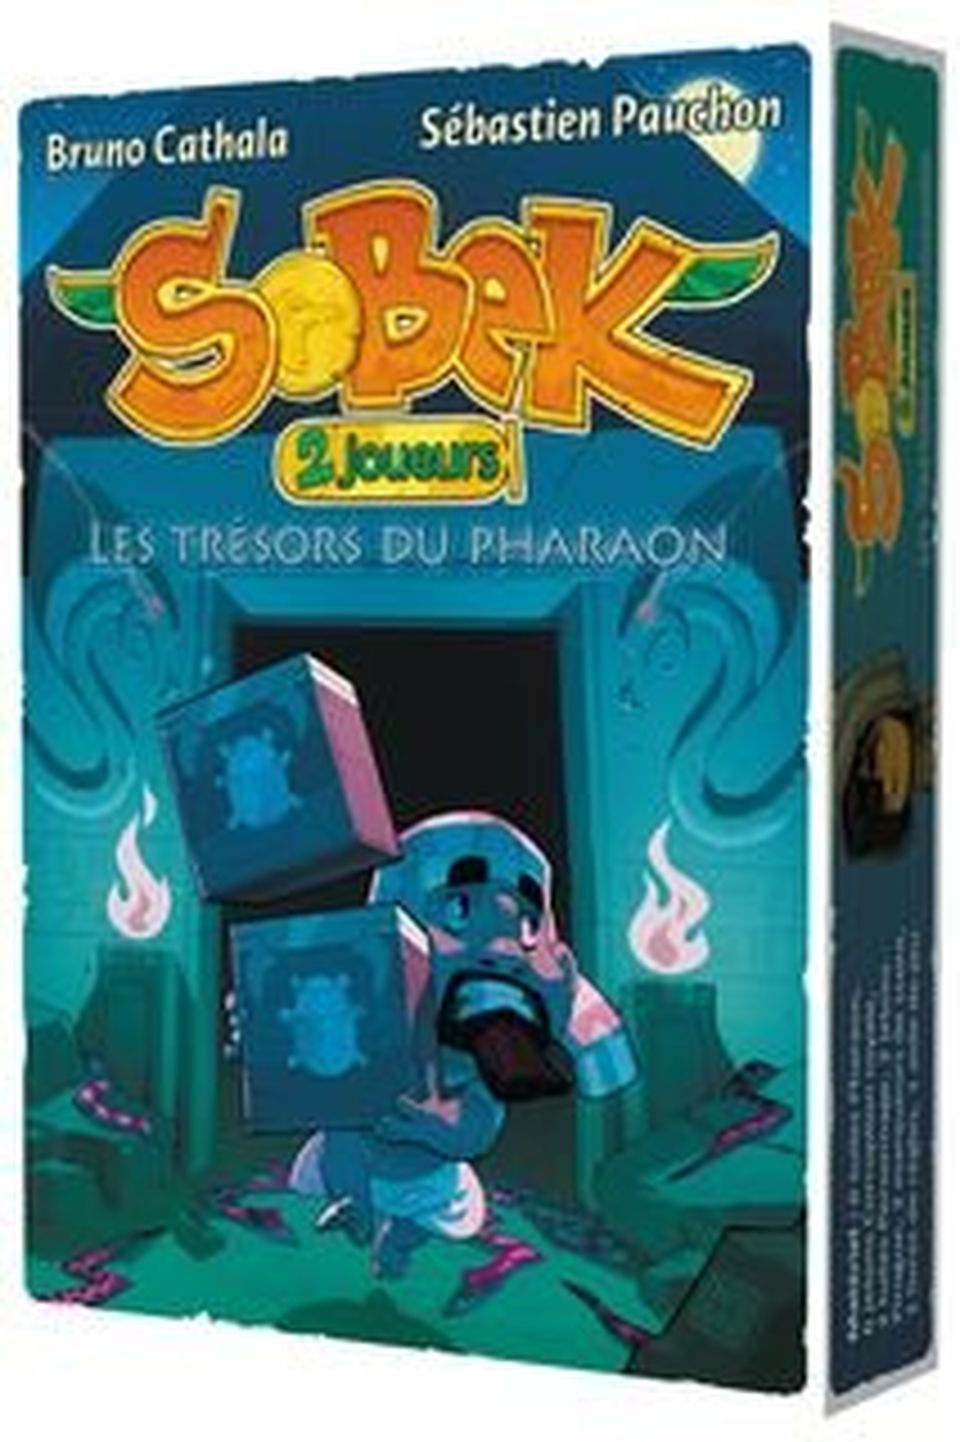 Sobek 2 Joueurs - Les Trésors du Pharaon (Ext.) image